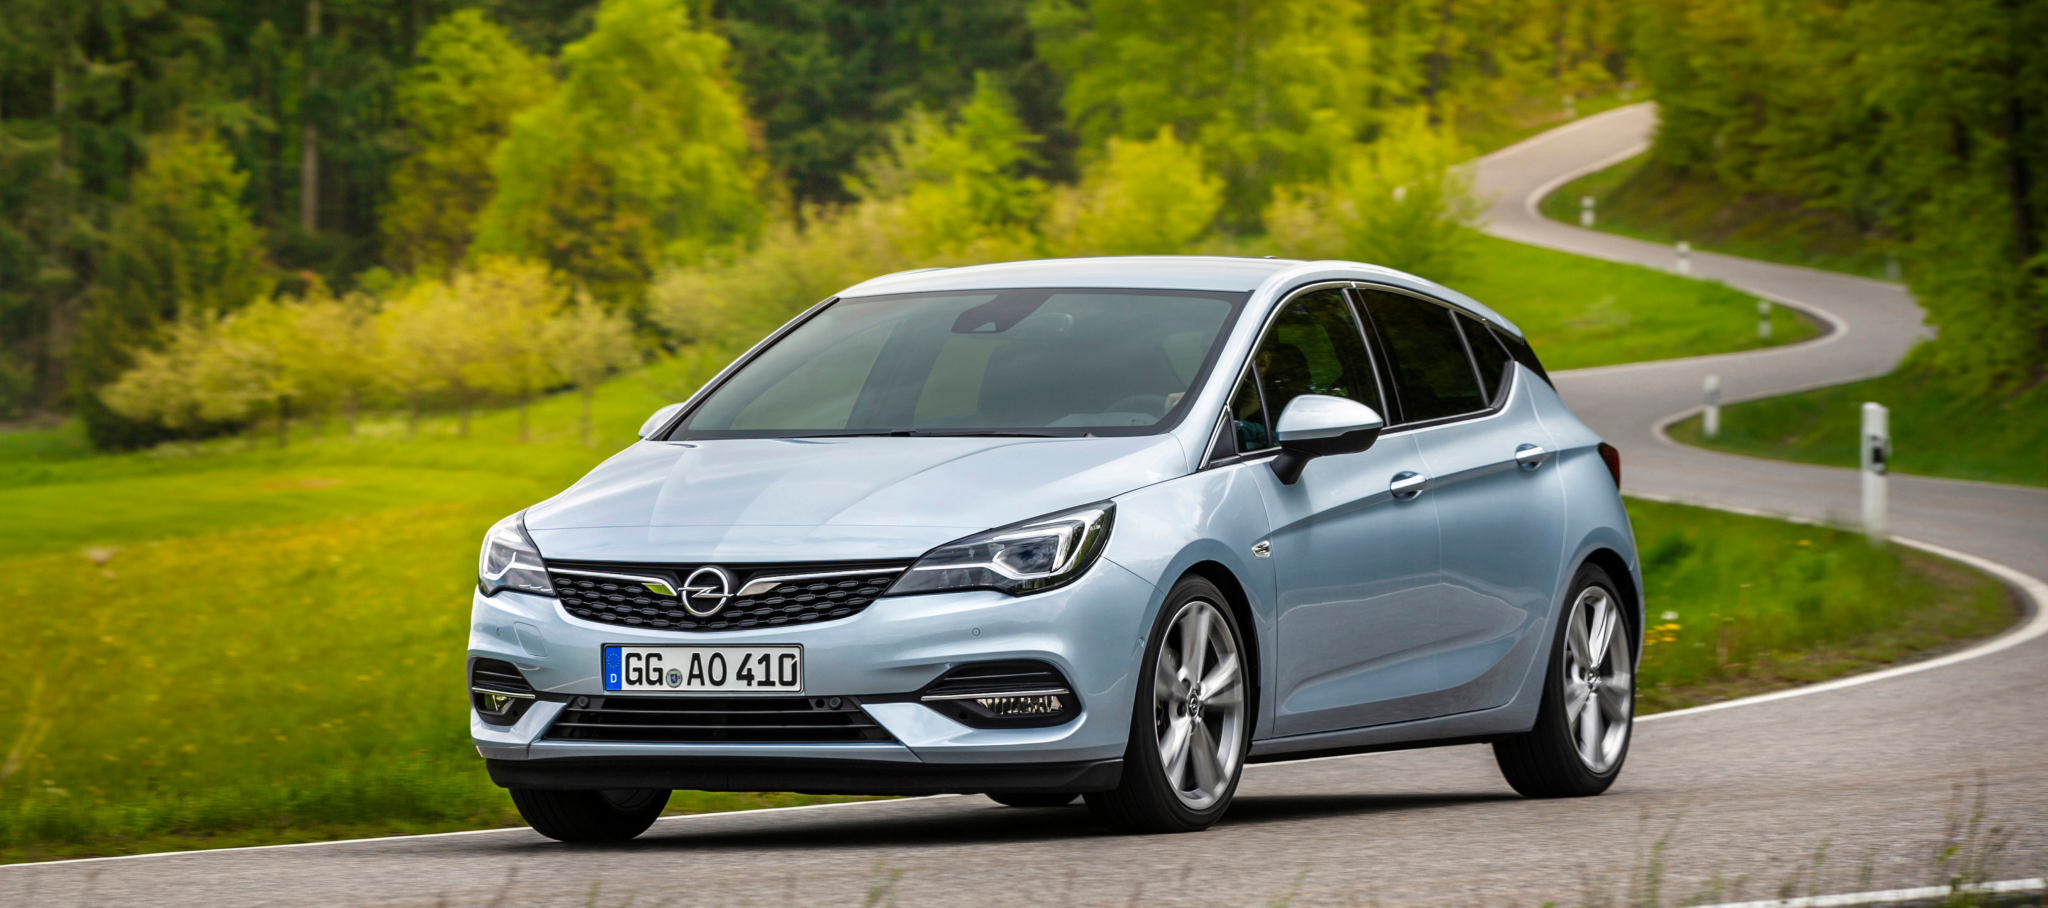 Opel Astra 507804 - El nuevo Opel Astra se pone al día en tecnología